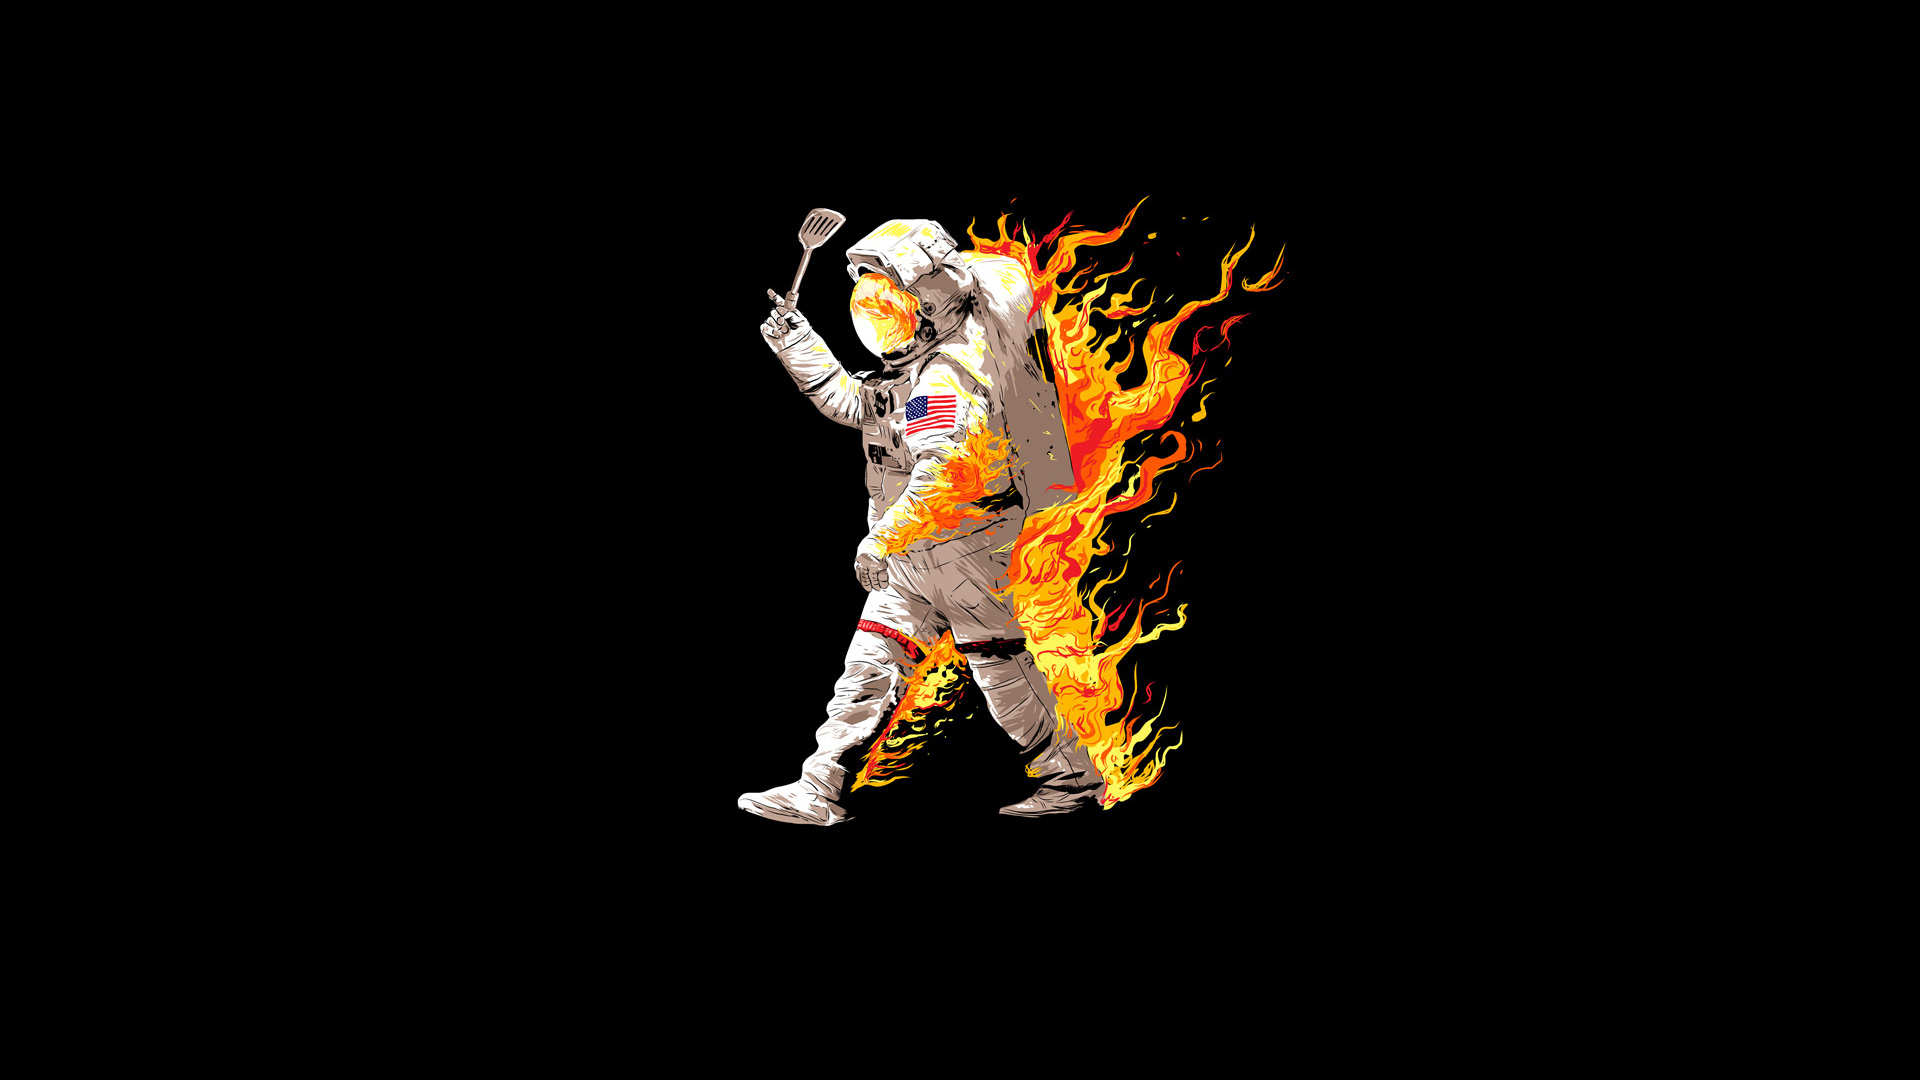 PCデスクトップに面白い, Sf, 宇宙飛行士, 火, ユーモア画像を無料でダウンロード